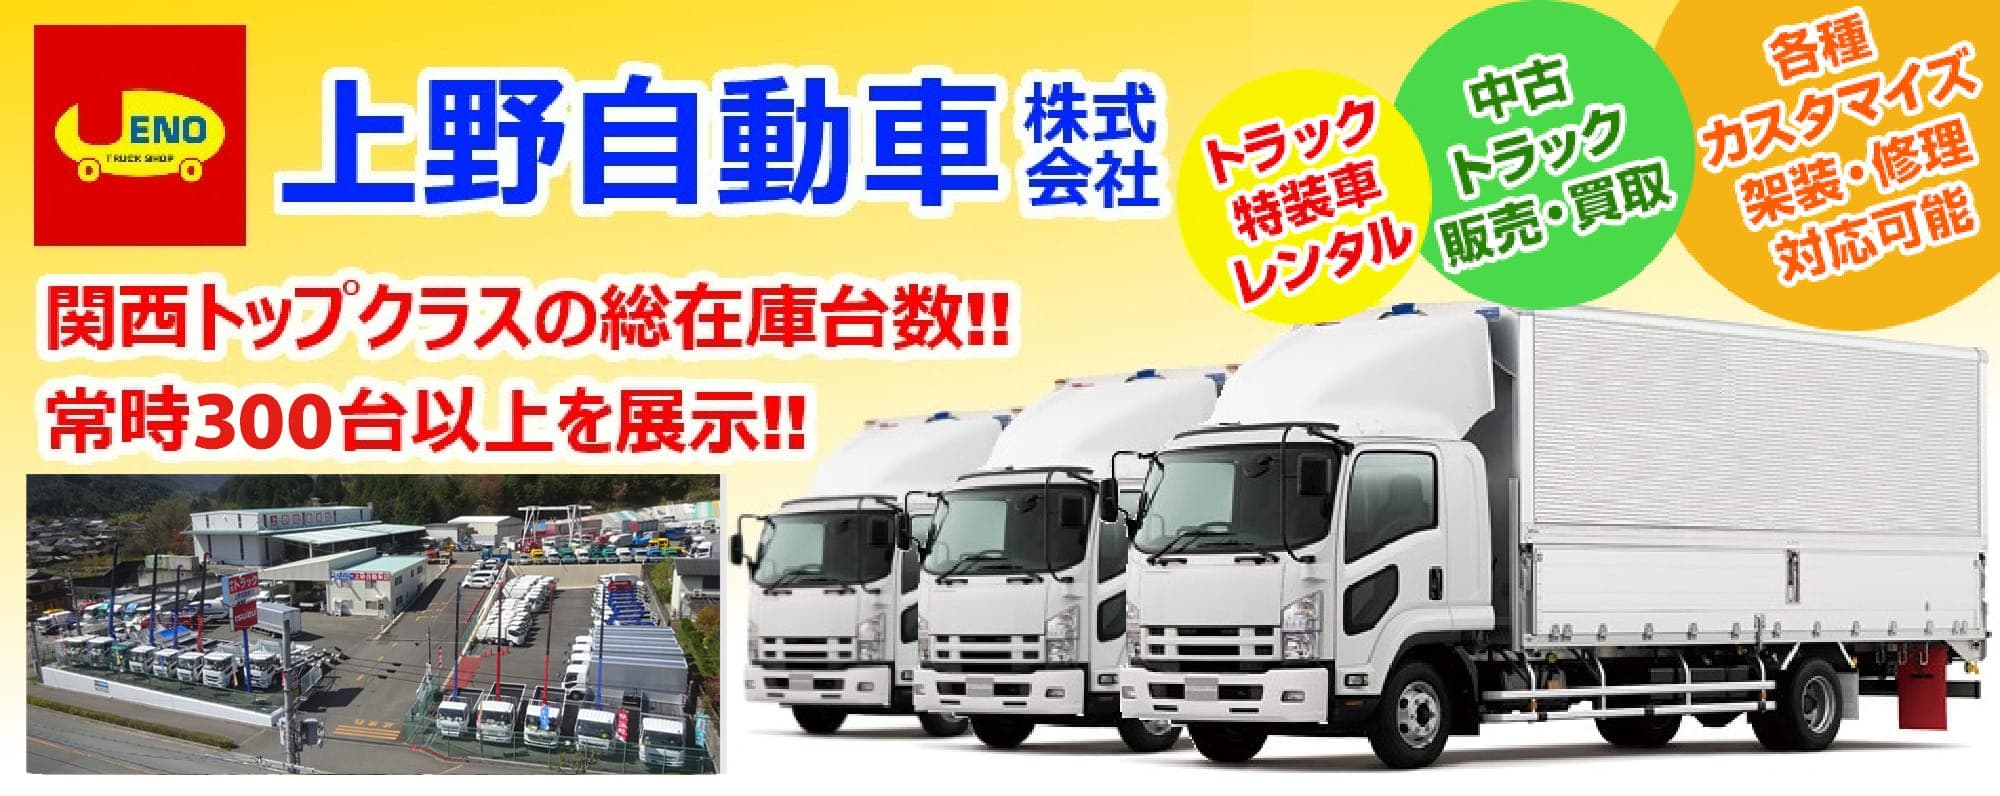 「上野自動車株式会社」トラック特装車レンタル。中古トラック販売・買取。各種カスタマイズ、架装・修理対応可能。